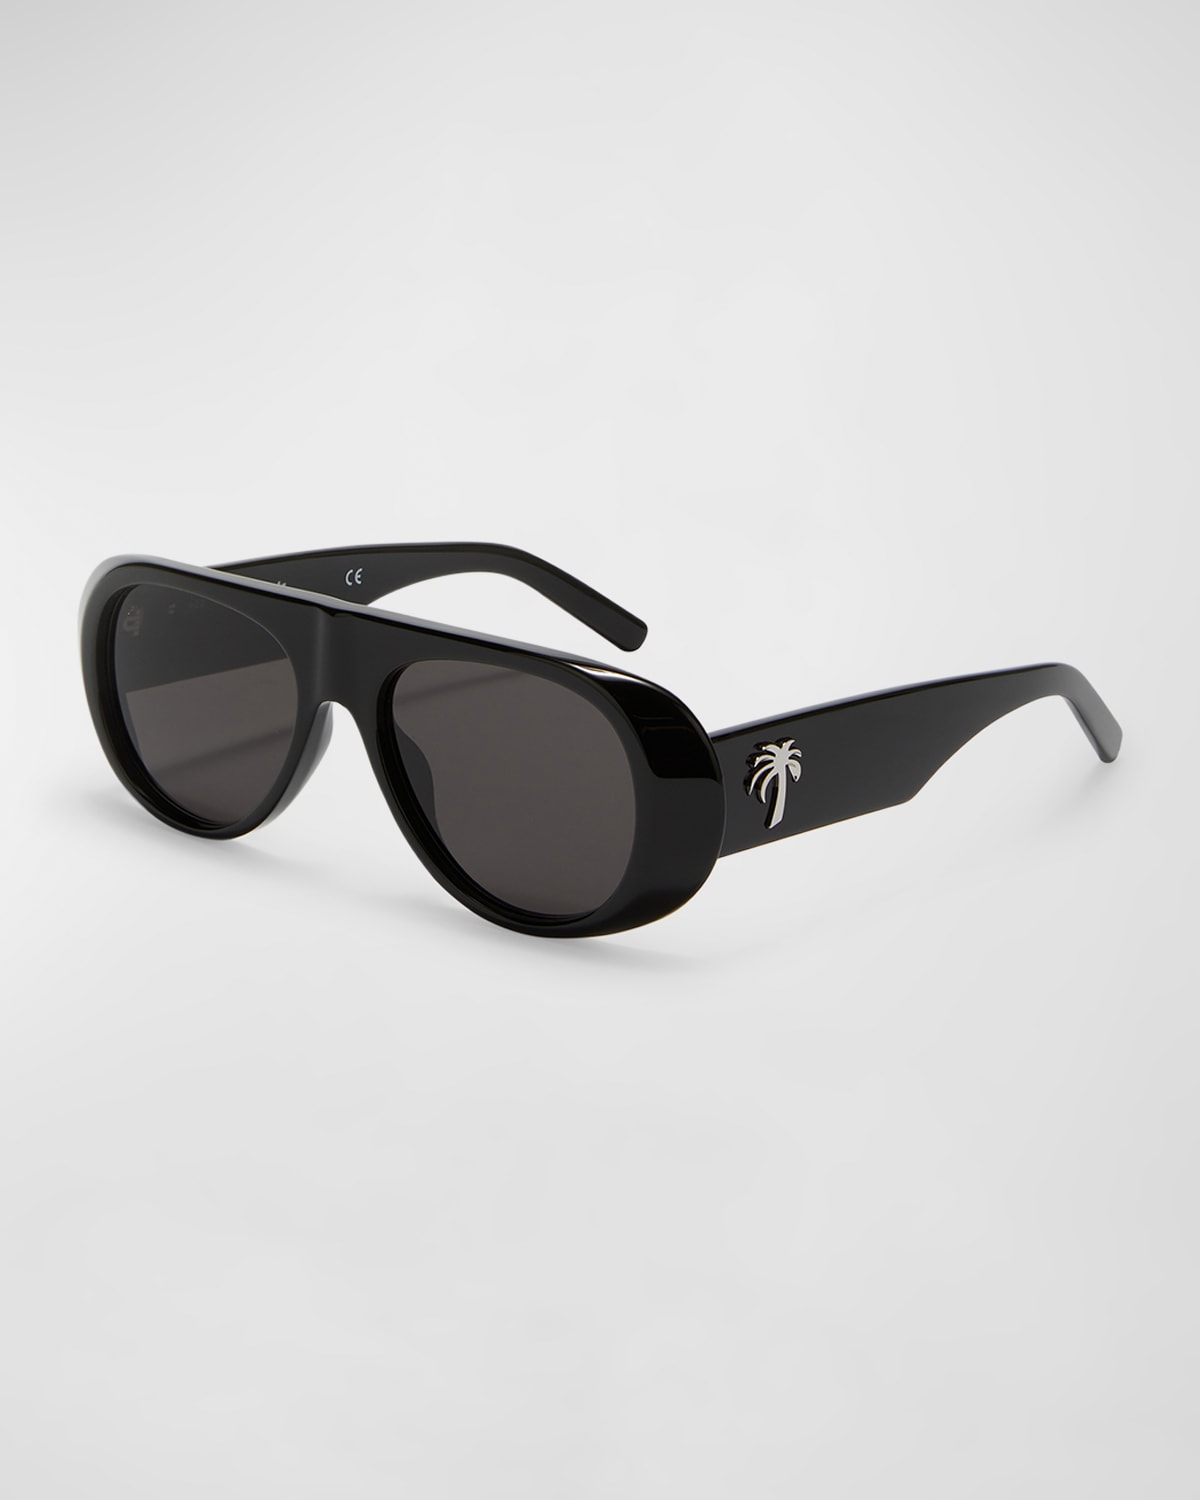 Palm Angels Men's Sierra Round Sunglasses In Black Dark Grey